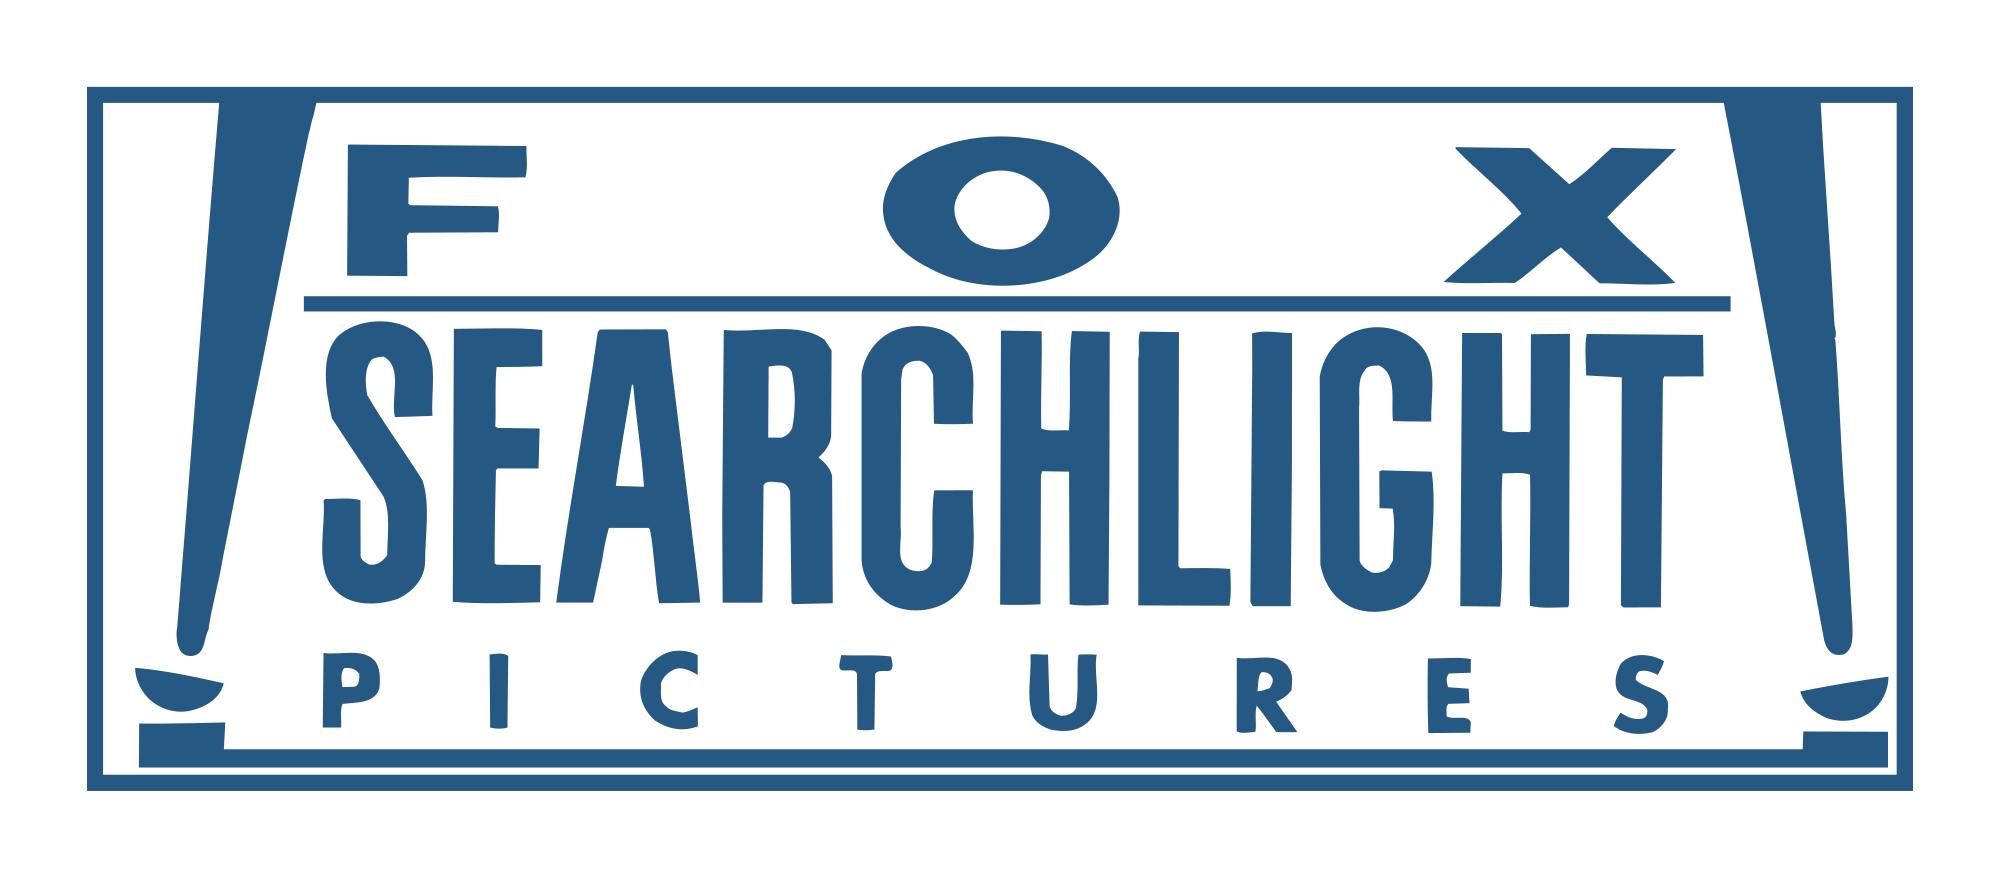 Fox Searchlight pictures. Searchlight pictures. Searchlight pictures логотип. Fox searchlight